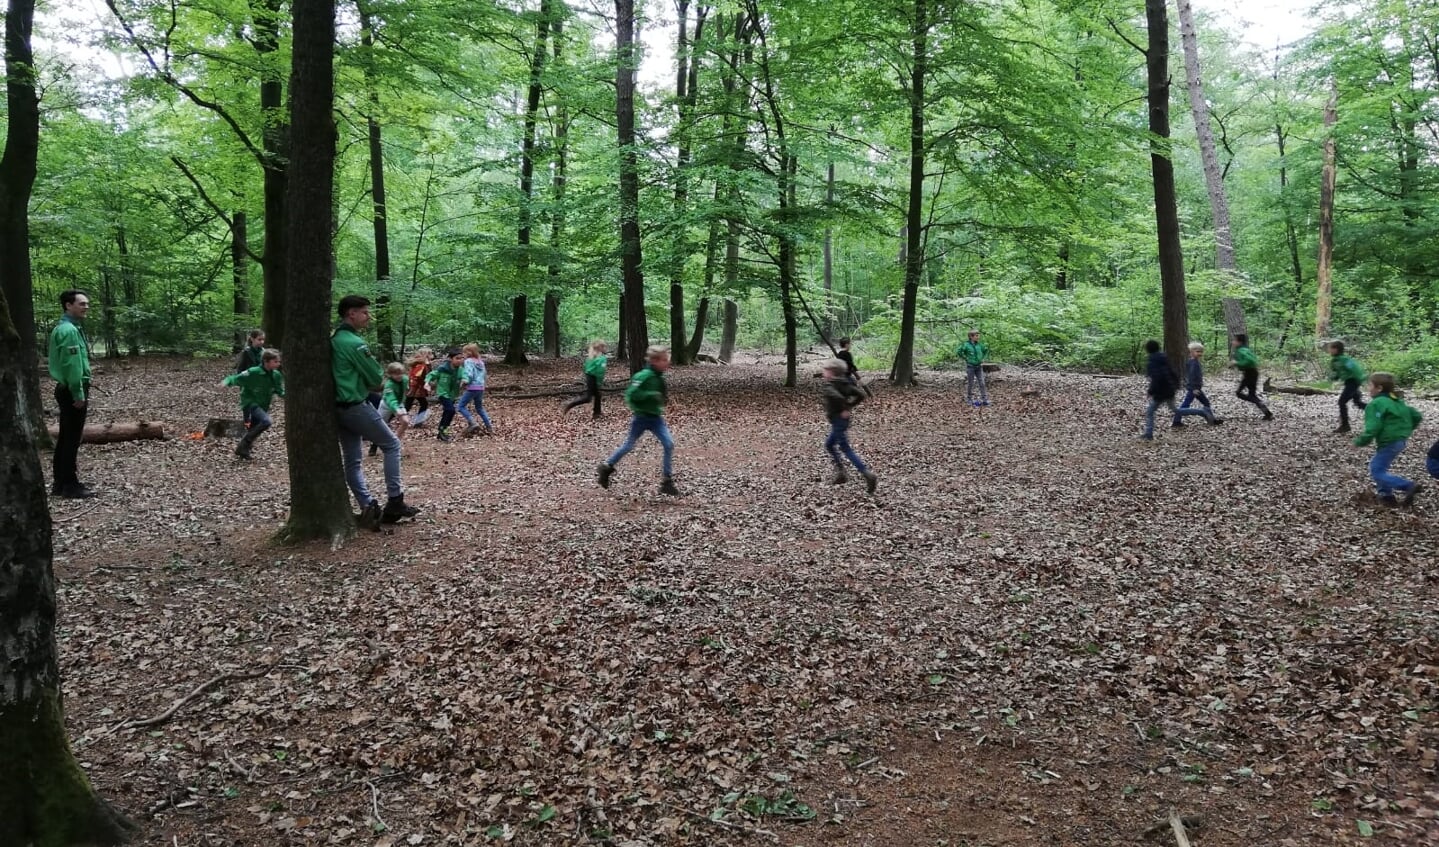 Welpen actief aan het spelen in het bos. Foto: N. Schimmel